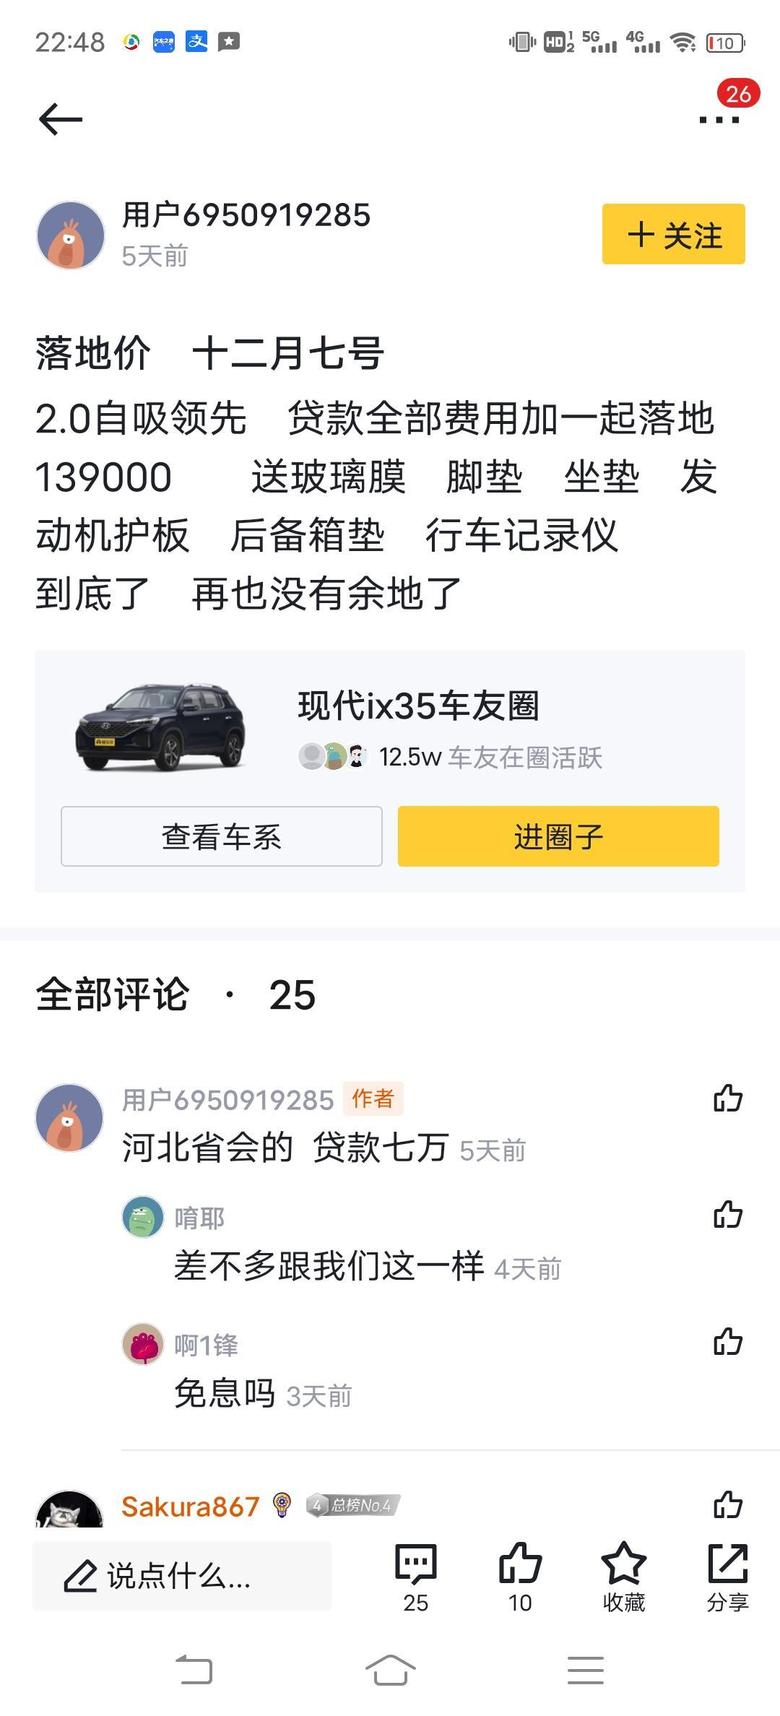 现代ix35 车友门有计划在广州买的吗？2.0领先，现在落地价多少，想多了解一下，一起沟通下